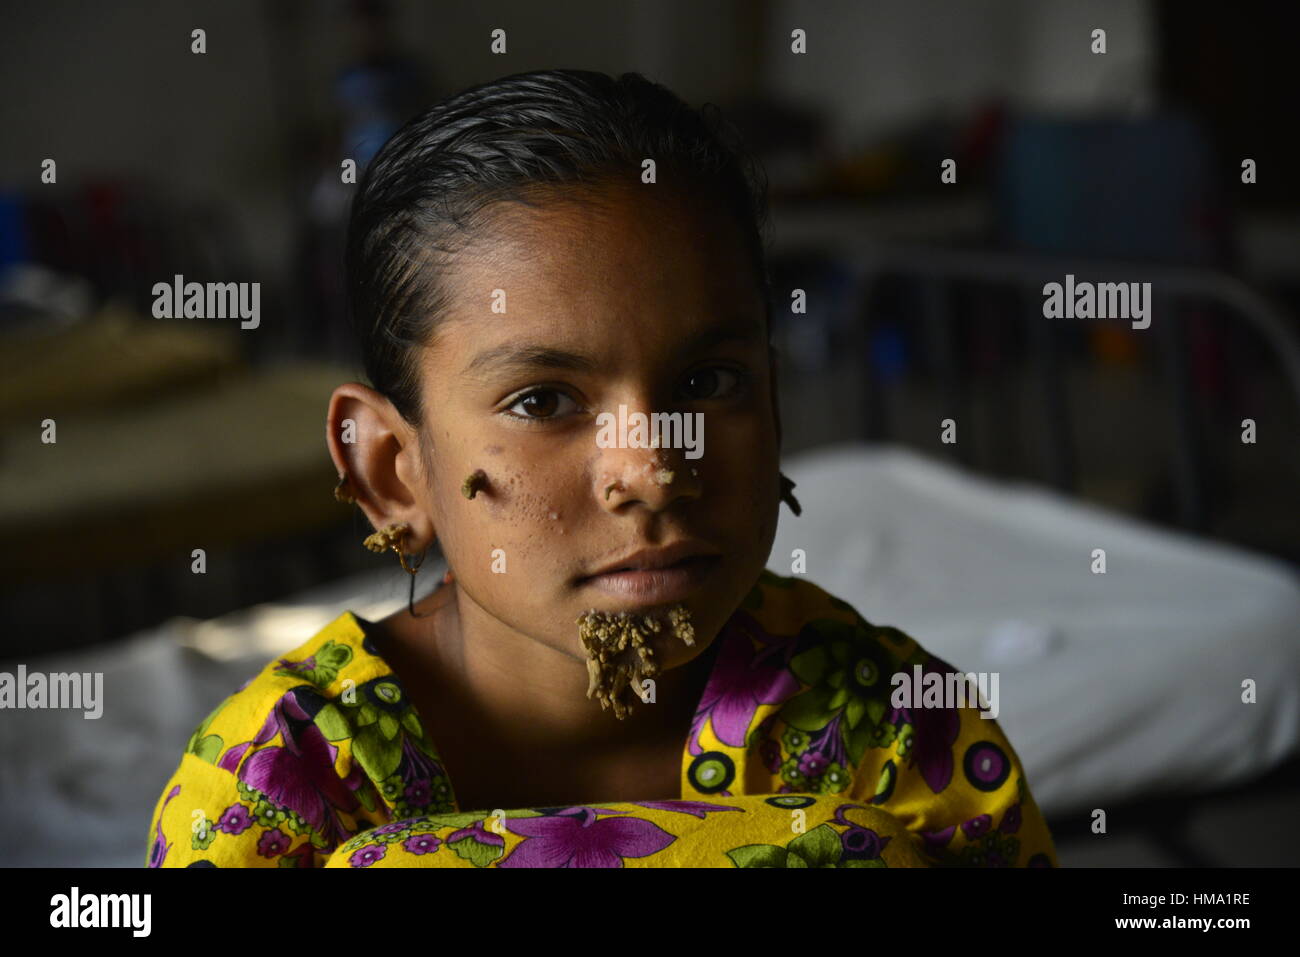 Paziente del Bangladesh Sahana Khatun, 10, in posa per una fotografia a Dhaka Medical College e ospedale. Il 1 febbraio 2017 una giovane ragazza del Bangladesh con corteccia-come le verruche crescente sul suo viso potrebbe essere la prima donna sempre afflitto da cosiddetti "tree sindrome uomo', i medici studiano la condizione rara detto gennaio 31. Dieci anni Khatun Sahana ha la spia crescite nodose spuntano dal suo mento, orecchio e naso, ma i medici a Dhaka Medical College Hospital sono ancora conducendo dei test per stabilire se essa ha il singolare disturbo della pelle. Foto Stock